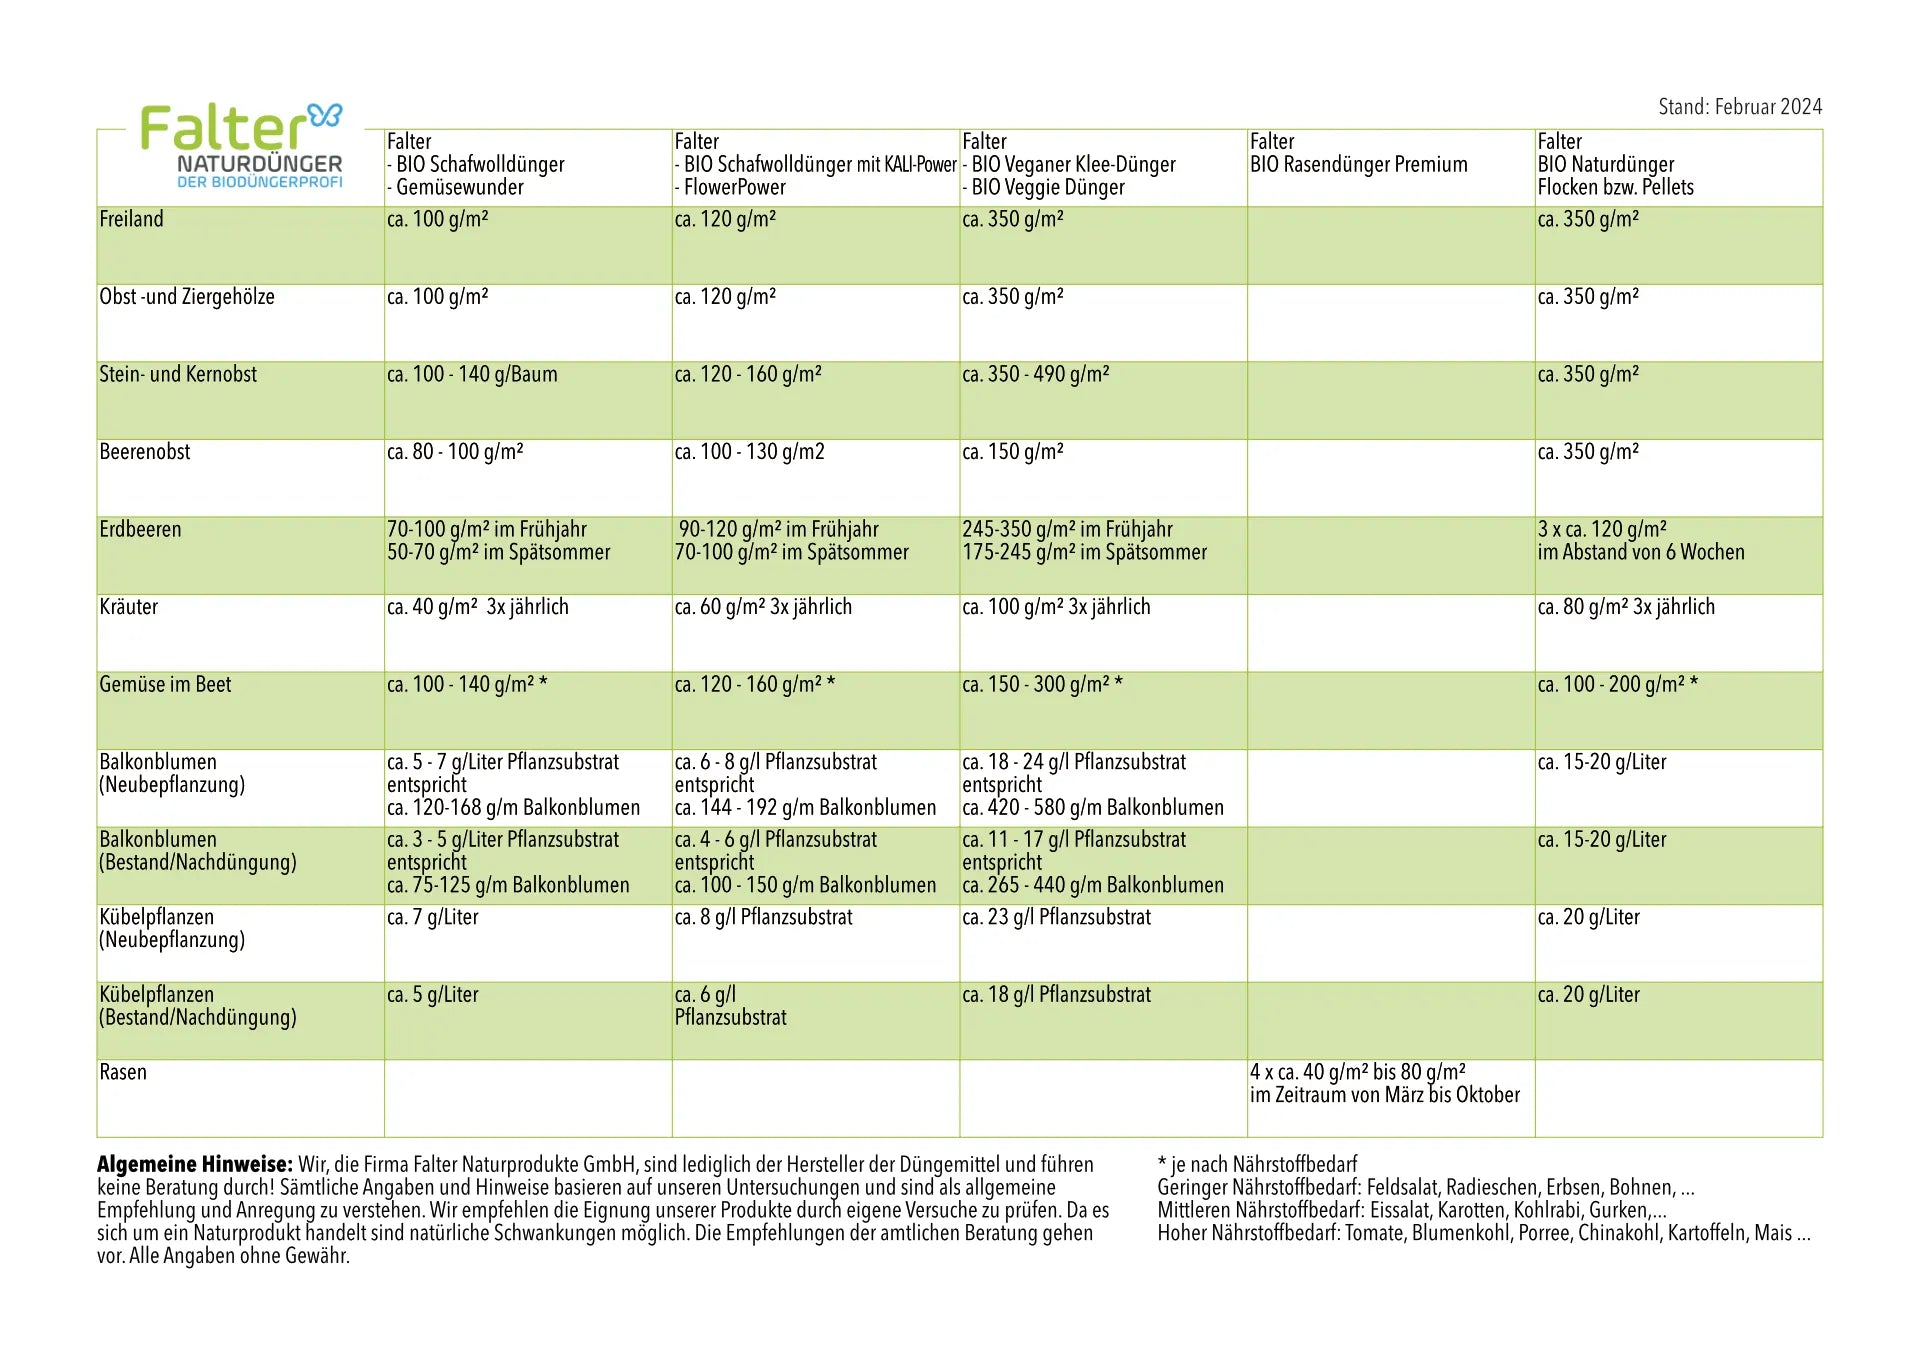 Falter Anwendungsempfehlung. Es handelt sich um eine Tabelle mit den Dosierangaben für unsere Biodünger. 